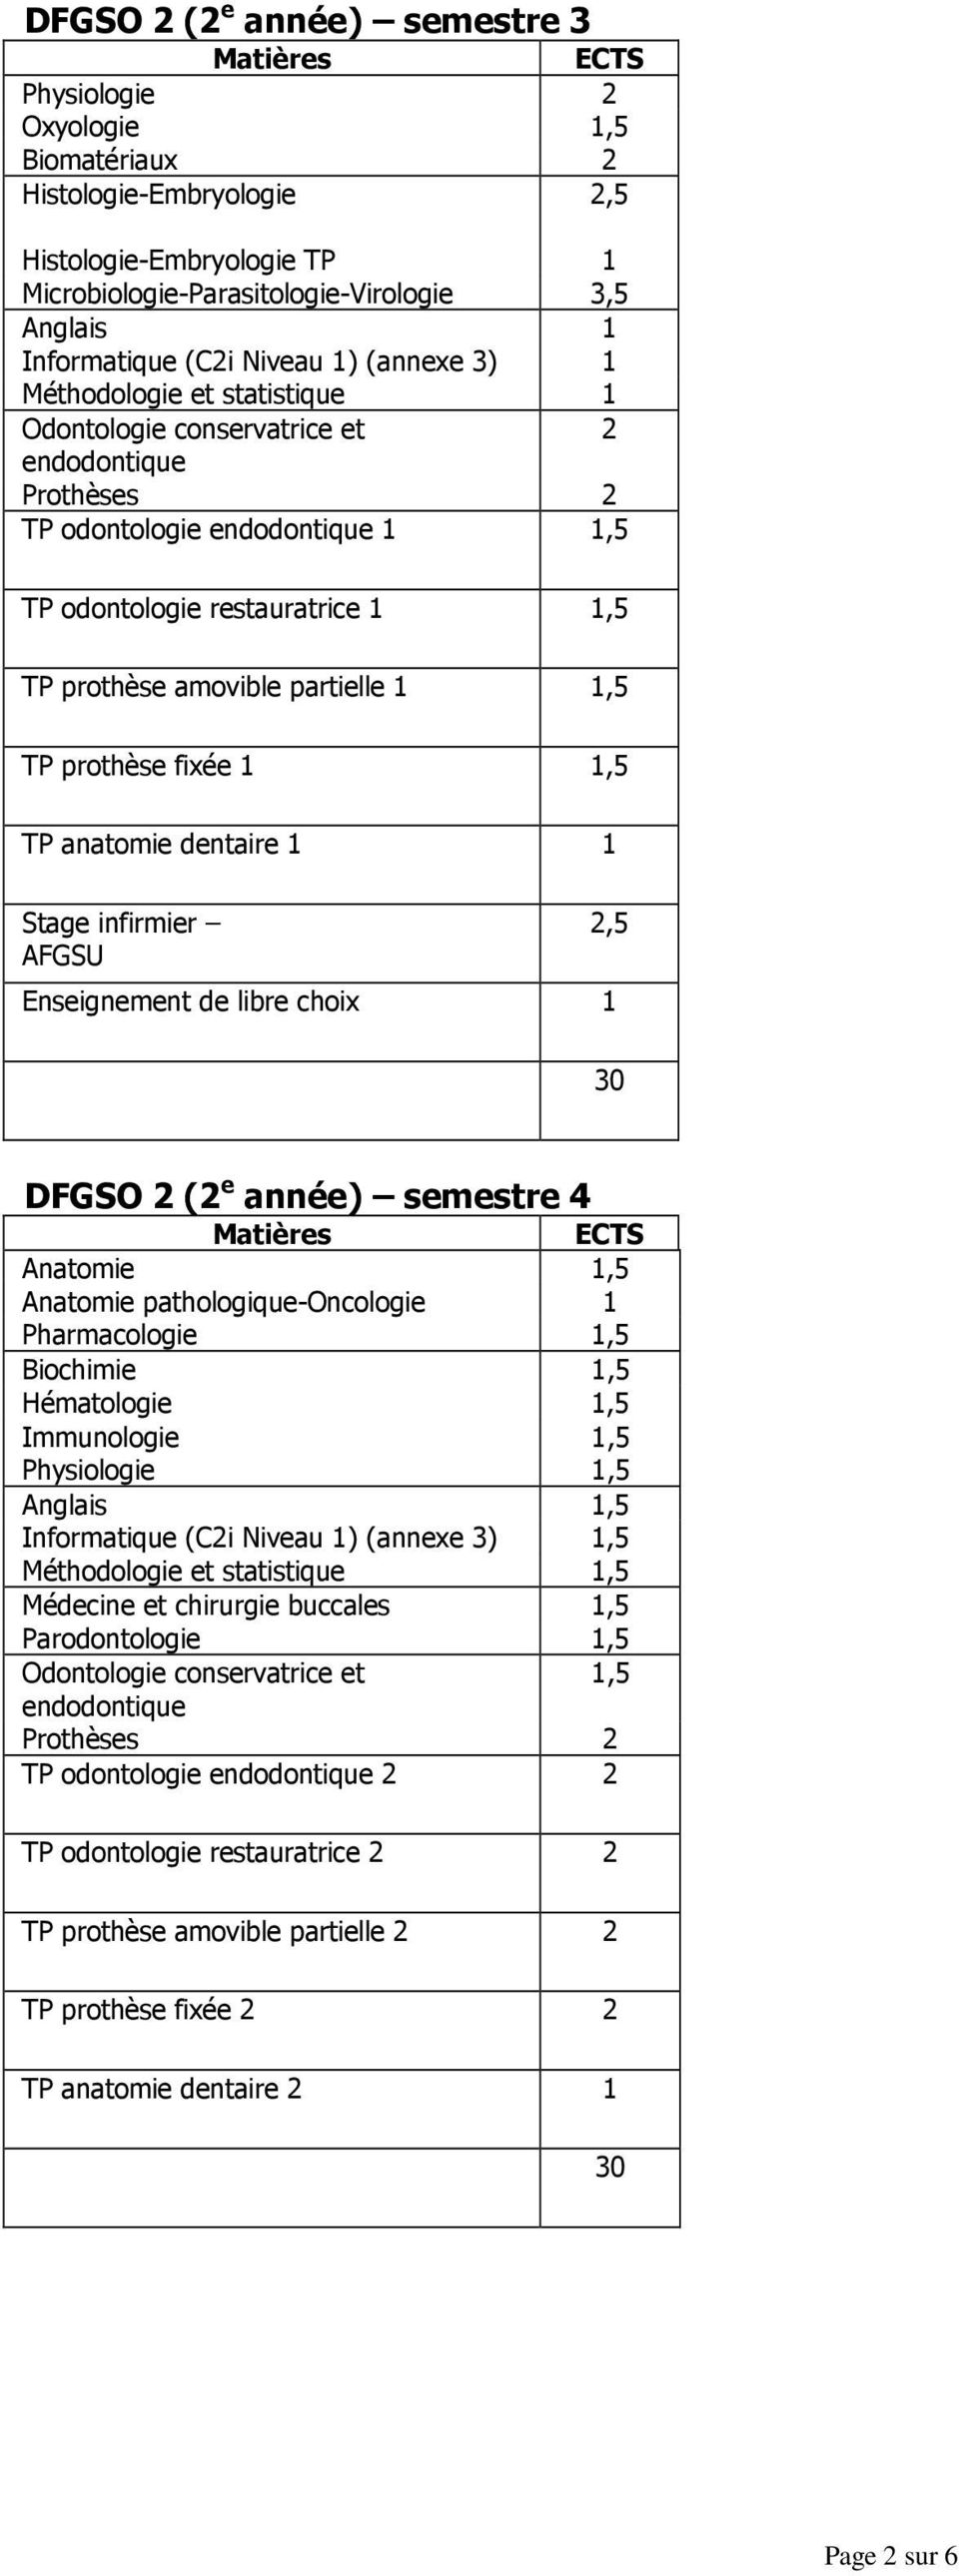 infirmier AFGSU Enseignement de libre choix,5 DFGSO ( e année) semestre 4 Anatomie,5 Anatomie pathologique-oncologie Pharmacologie,5 Biochimie,5 Hématologie,5 Immunologie Physiologie,5,5 Anglais,5